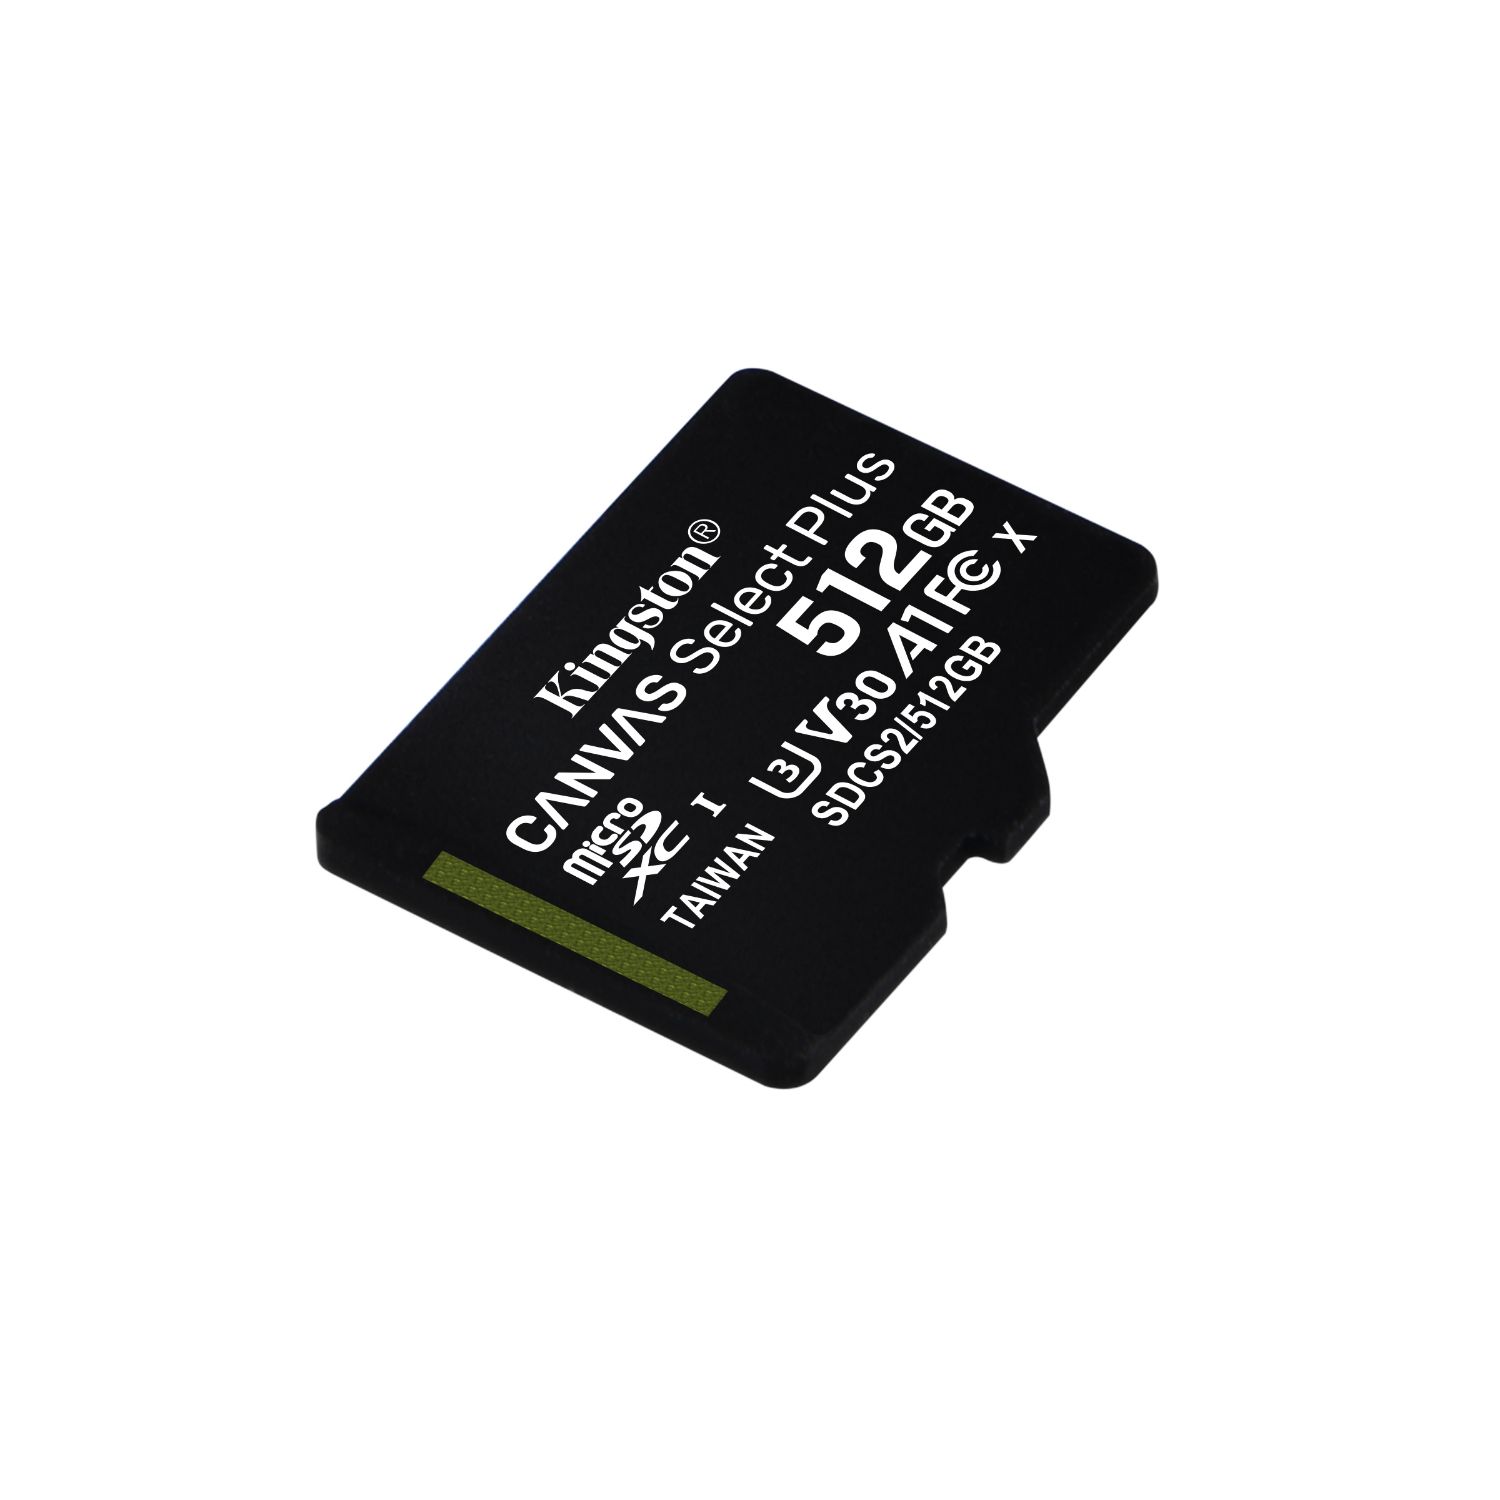 SDCS2/512GB - Kingston SDXC 512Gb Canvas Plus Clase 10 UHS-I U3 V30 Lectura 100 Mb/ Escritura 85 Mb/s + Adaptador (SDCS2/512GB)